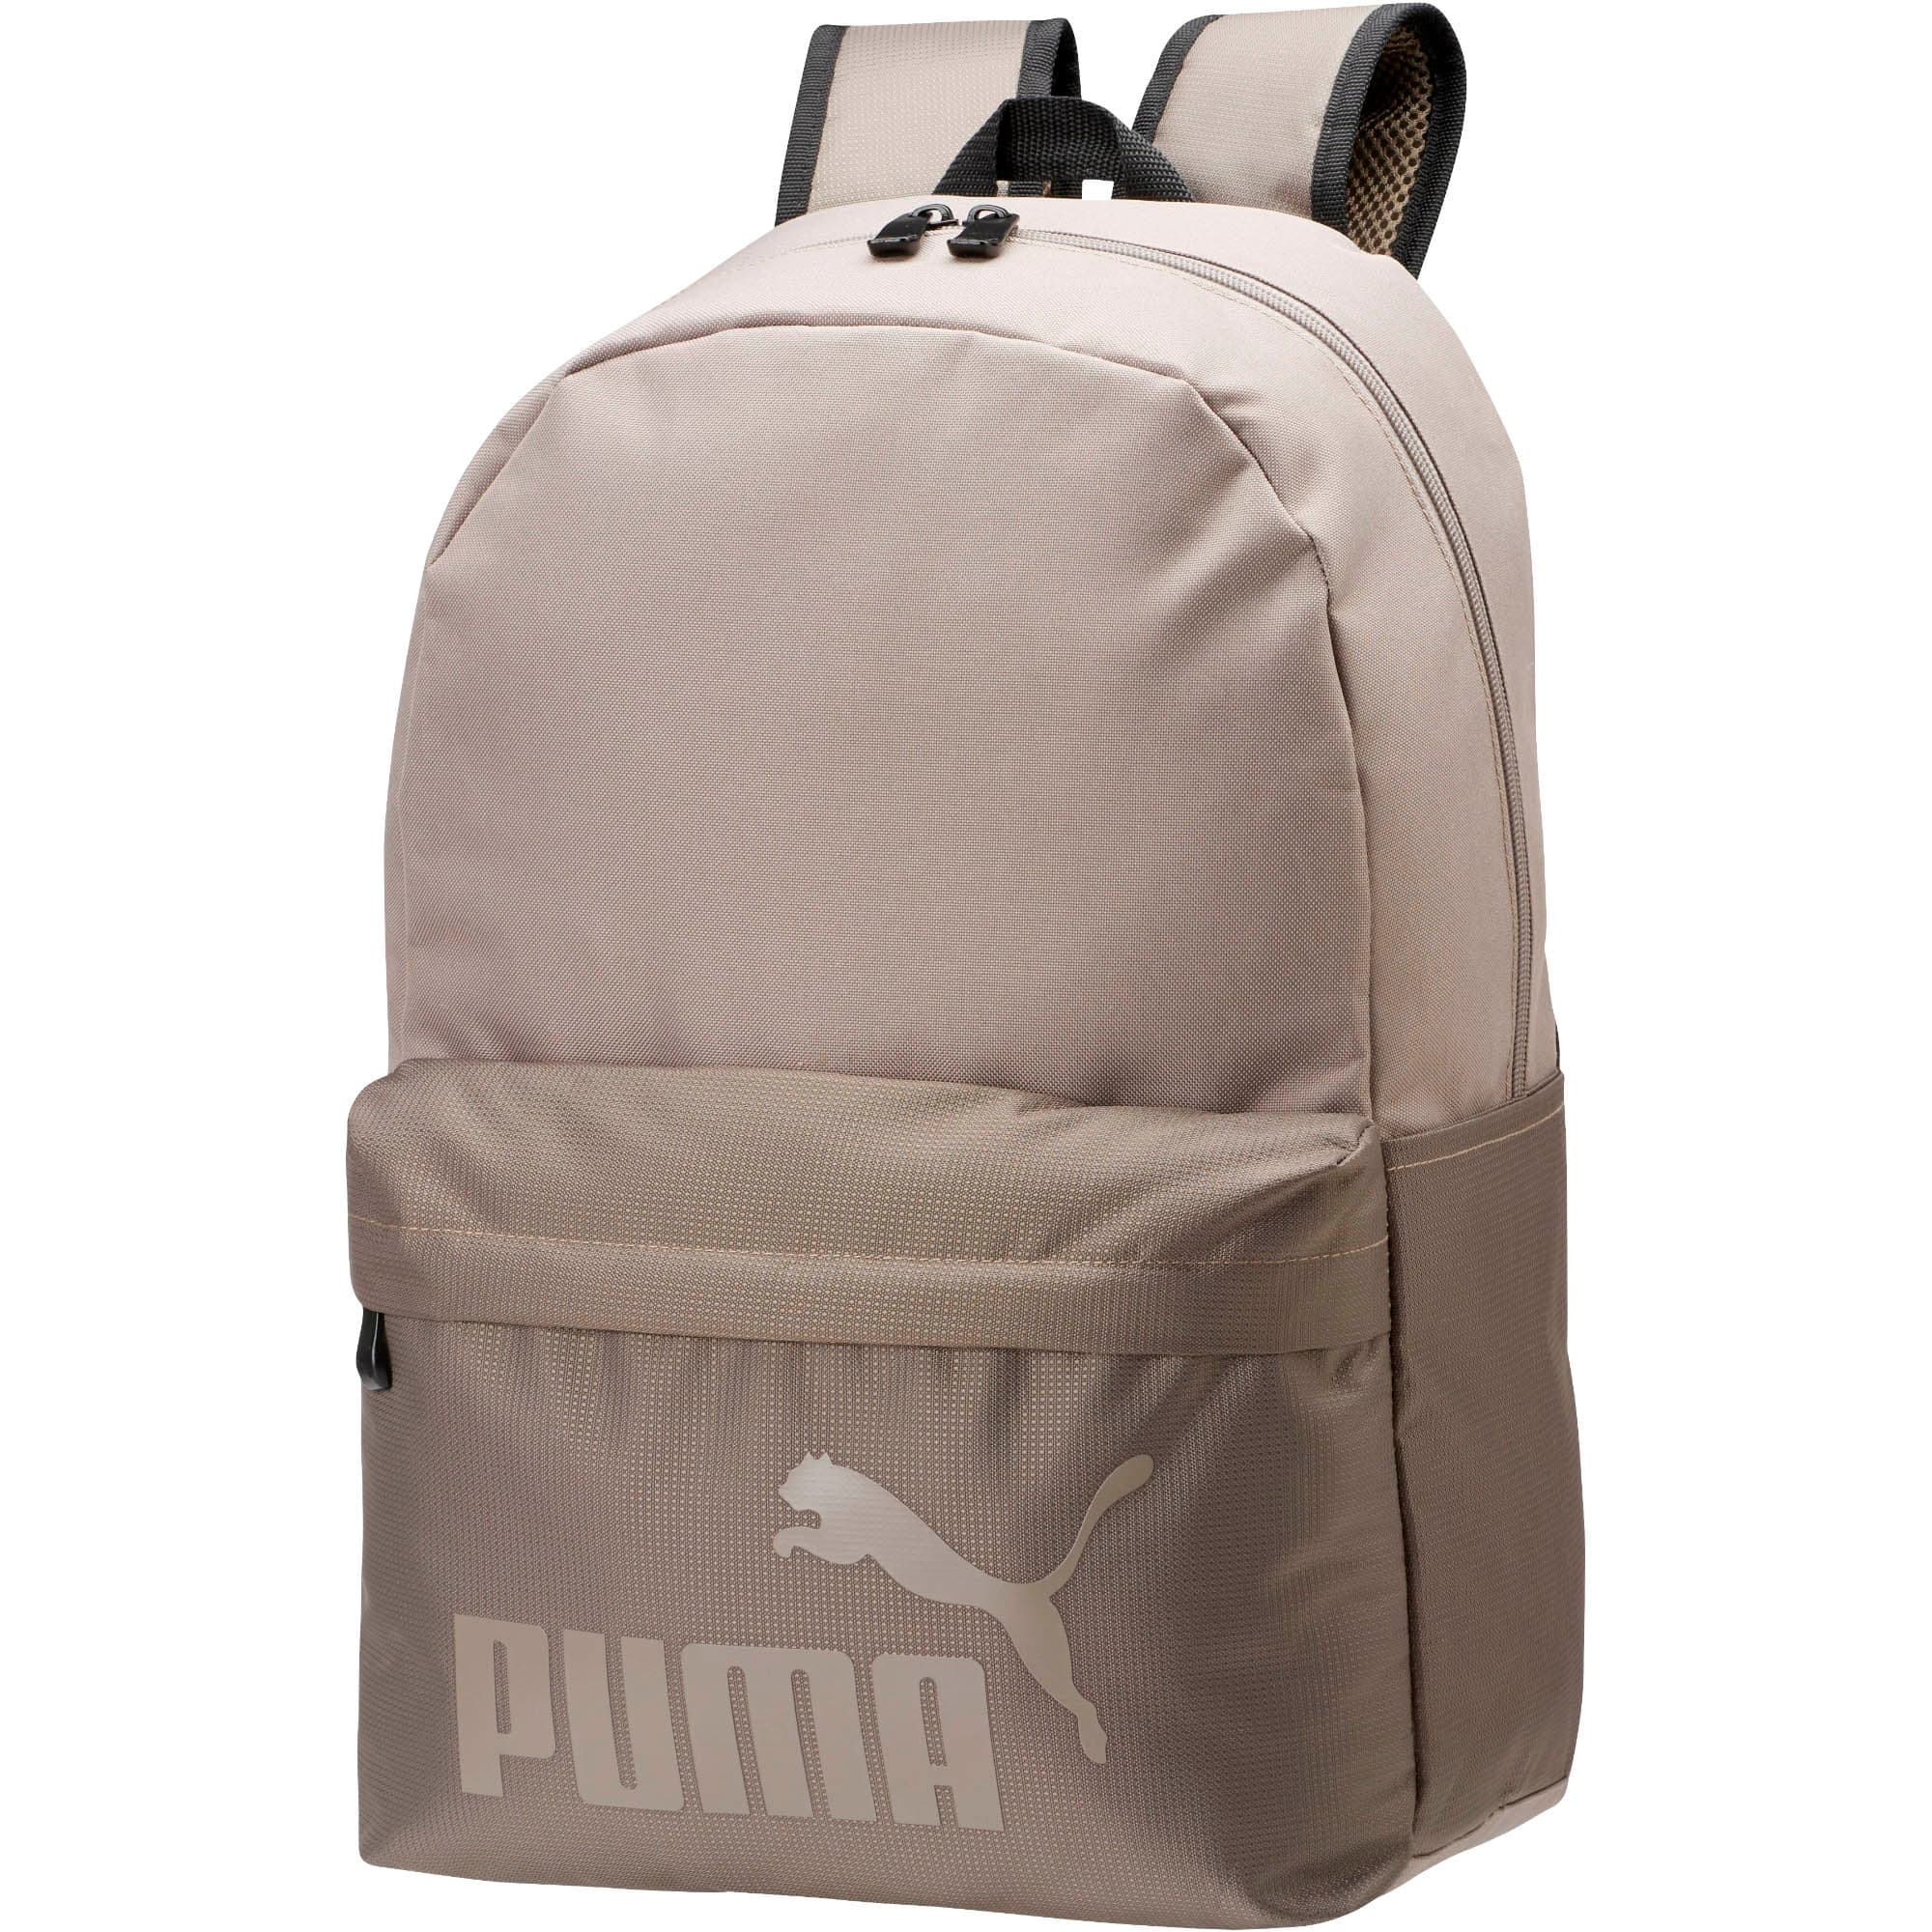 puma evercat backpack